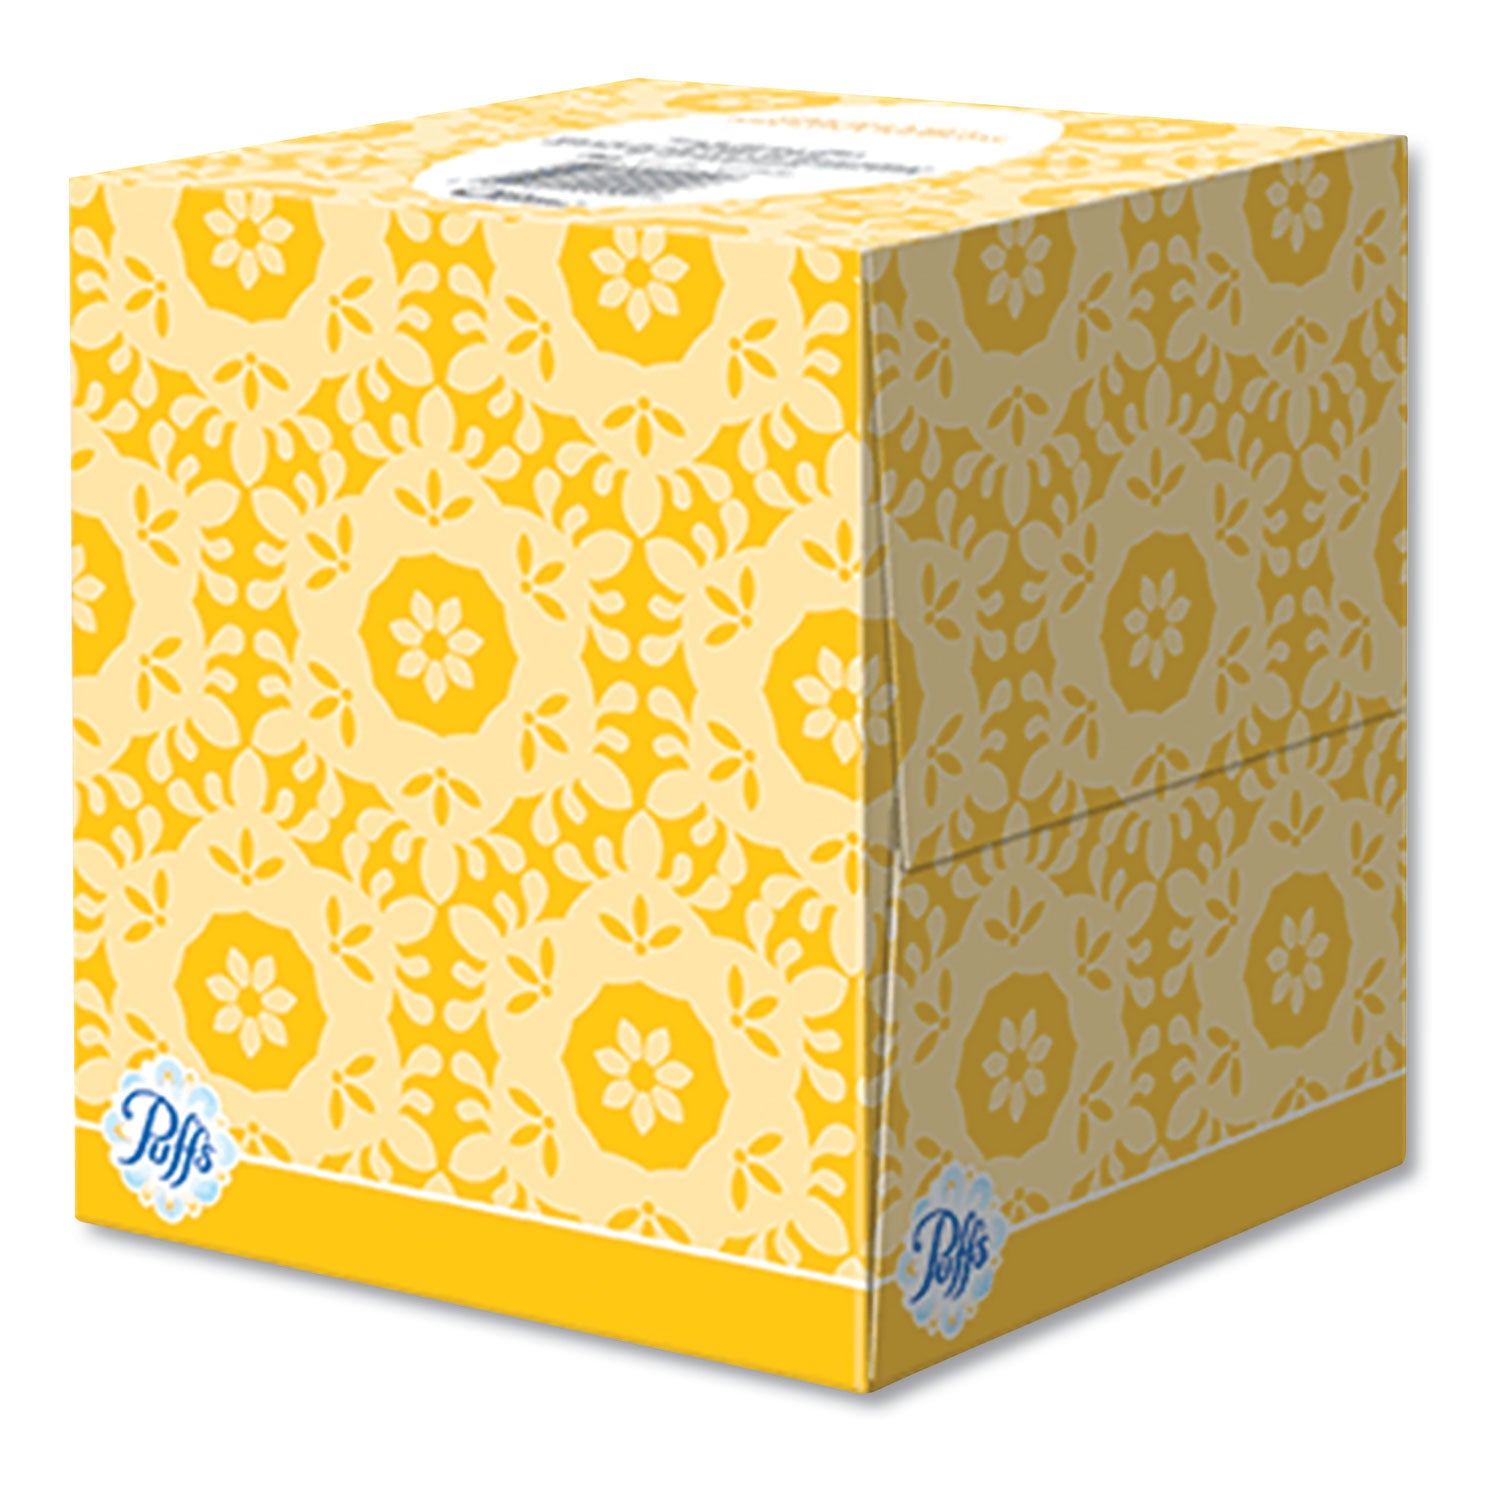 facial-tissue-2-ply-white-64-sheets-box-24-boxes-carton_pgc84405 - 2